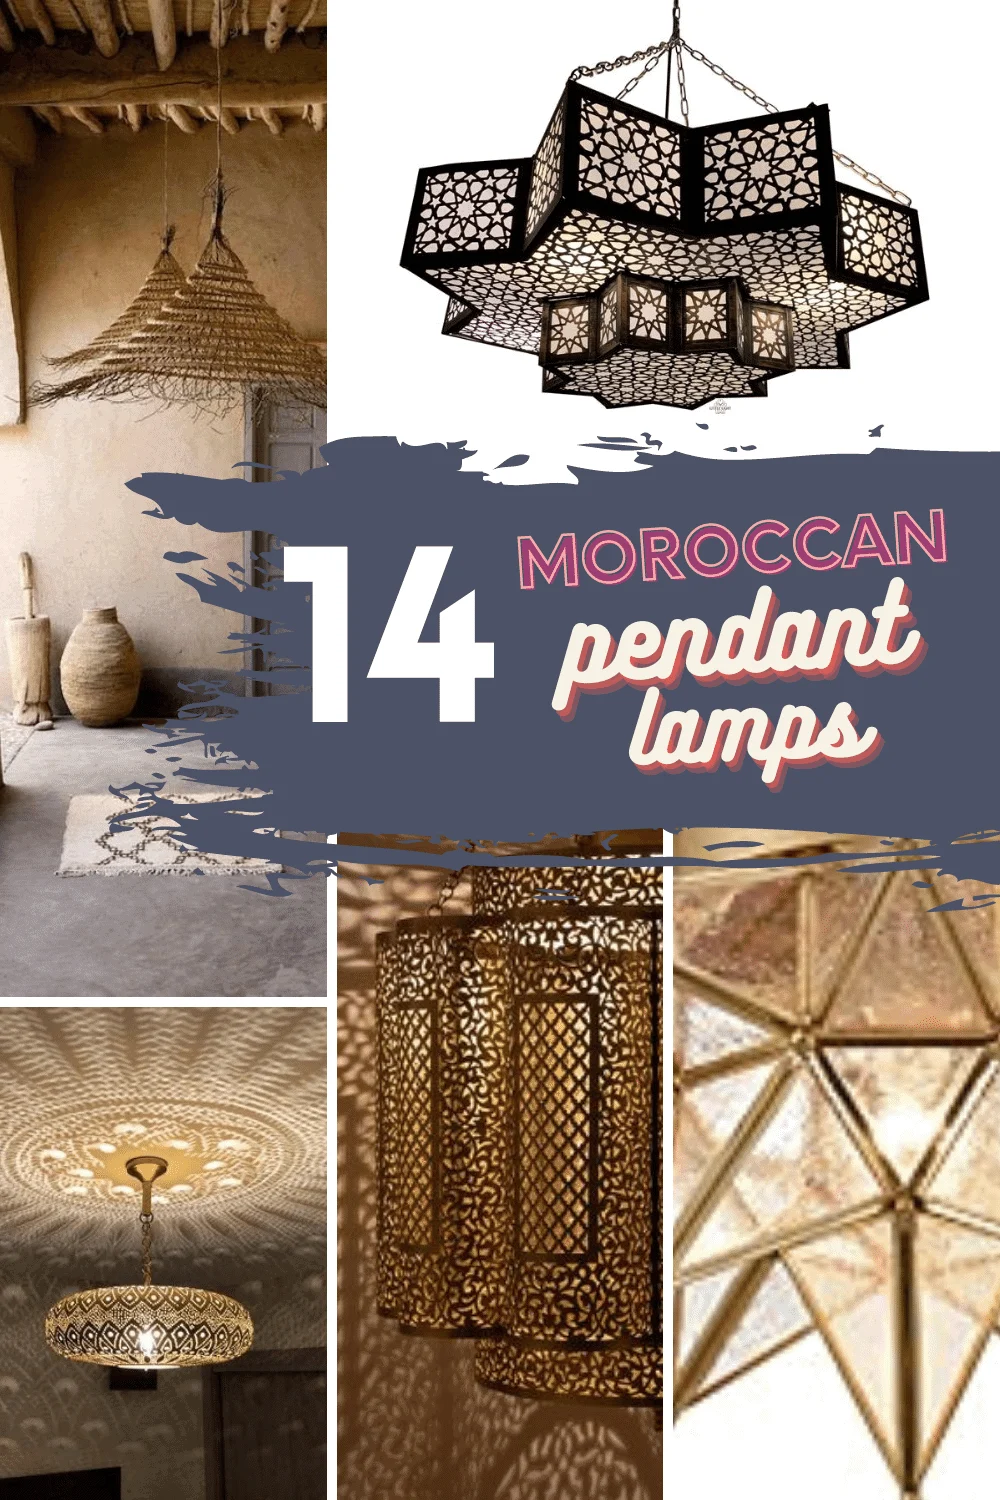 14 Moroccan Ceiling Lights To Light Up, Moroccan Chandeliers Lighting Fixtures